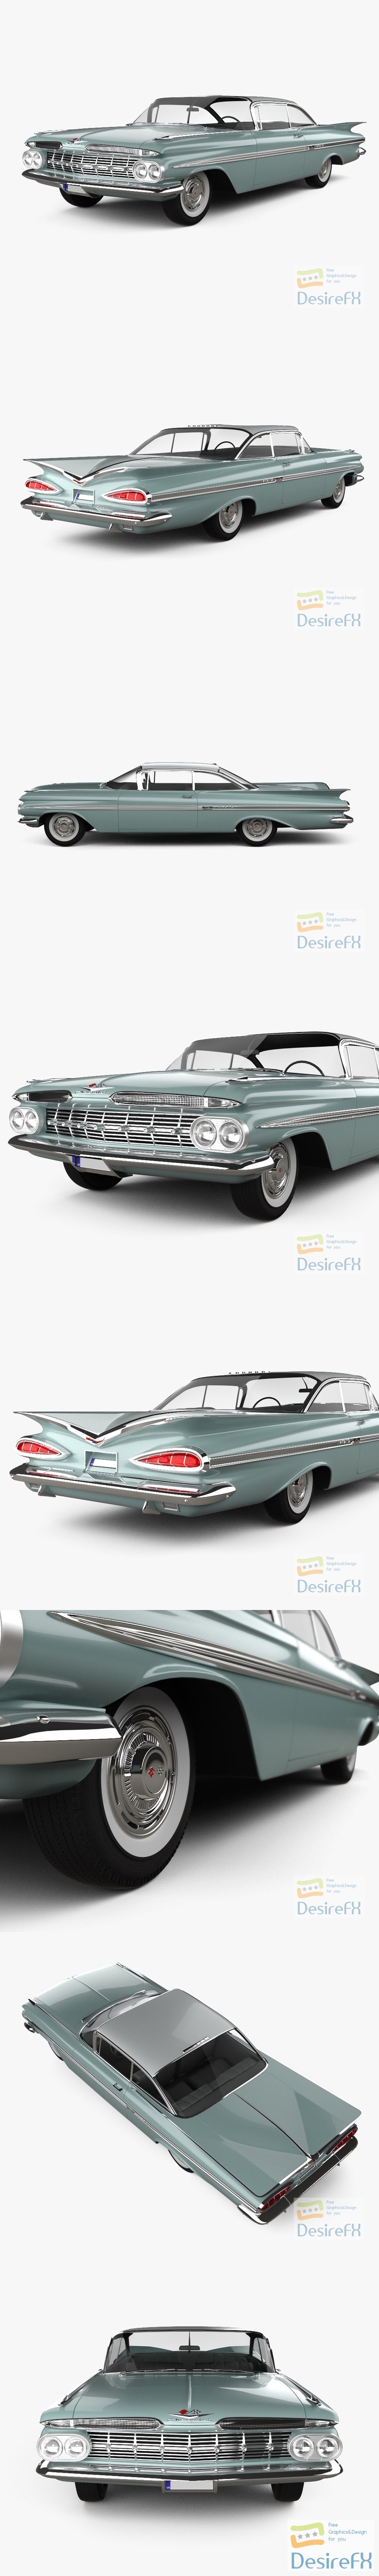 Chevrolet Impala Sport Coupe 1962 3D Model